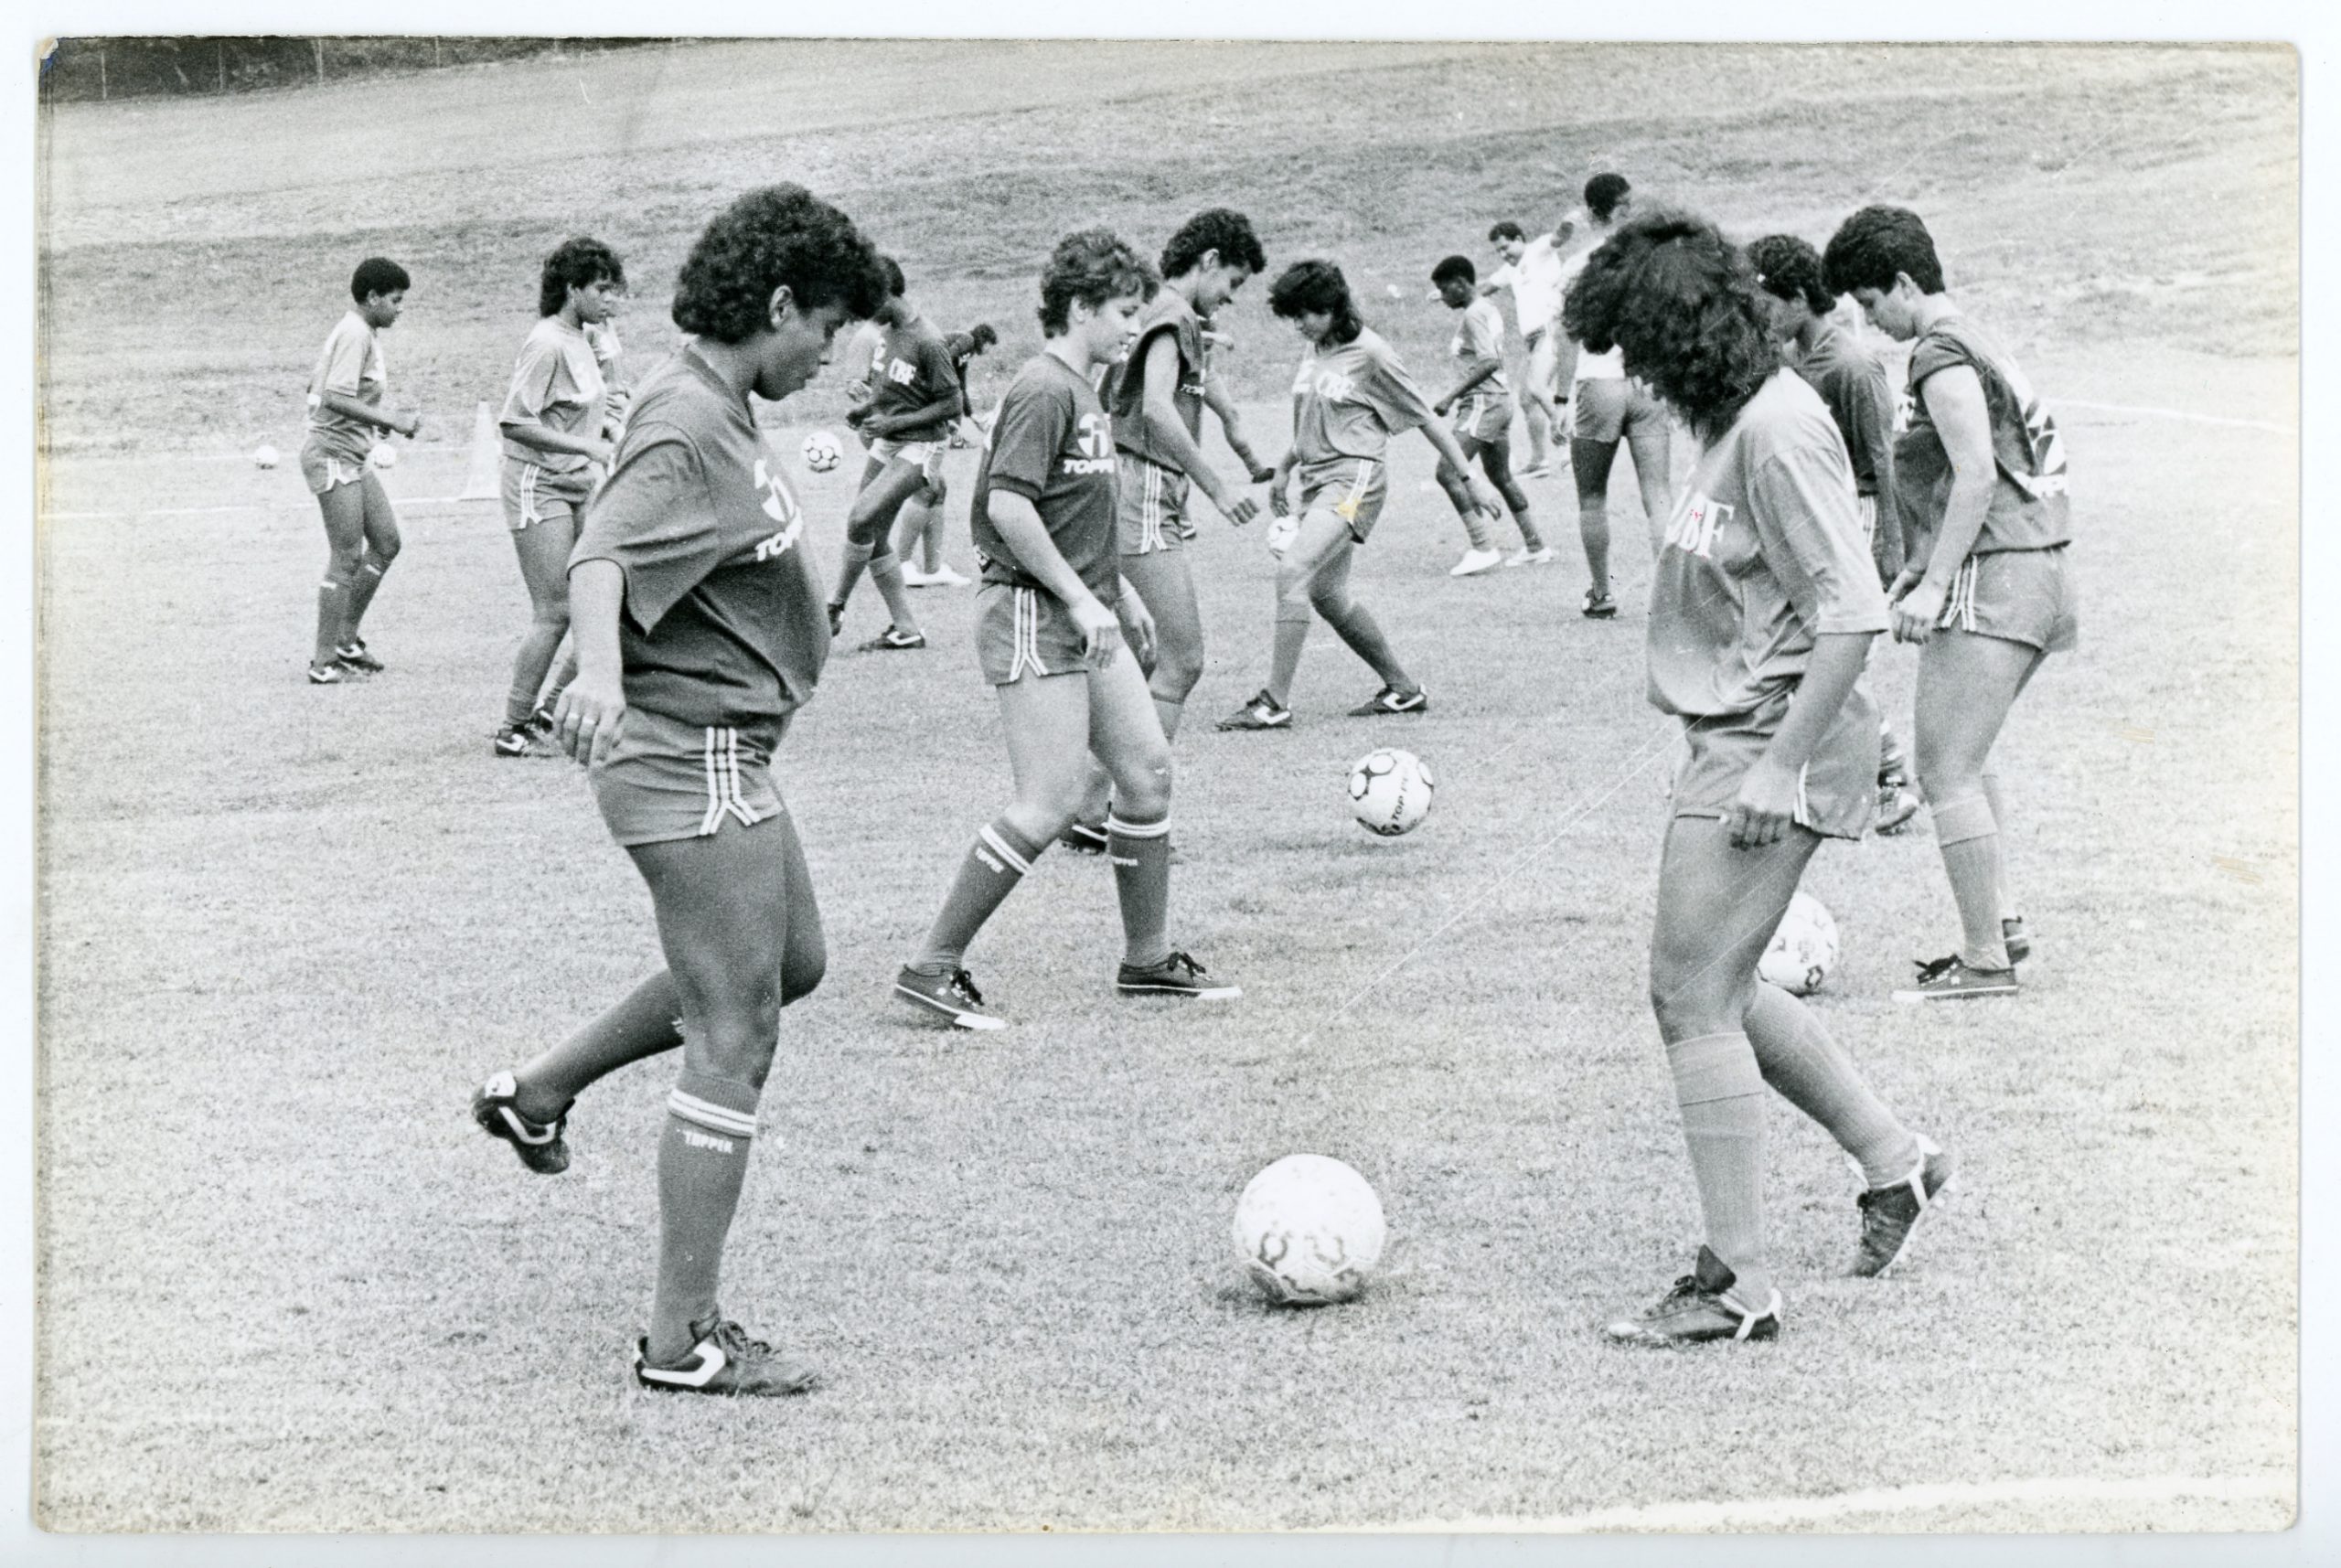 Museu do Futebol exibirá jogos da Copa do Mundo feminina - Gazeta Esportiva